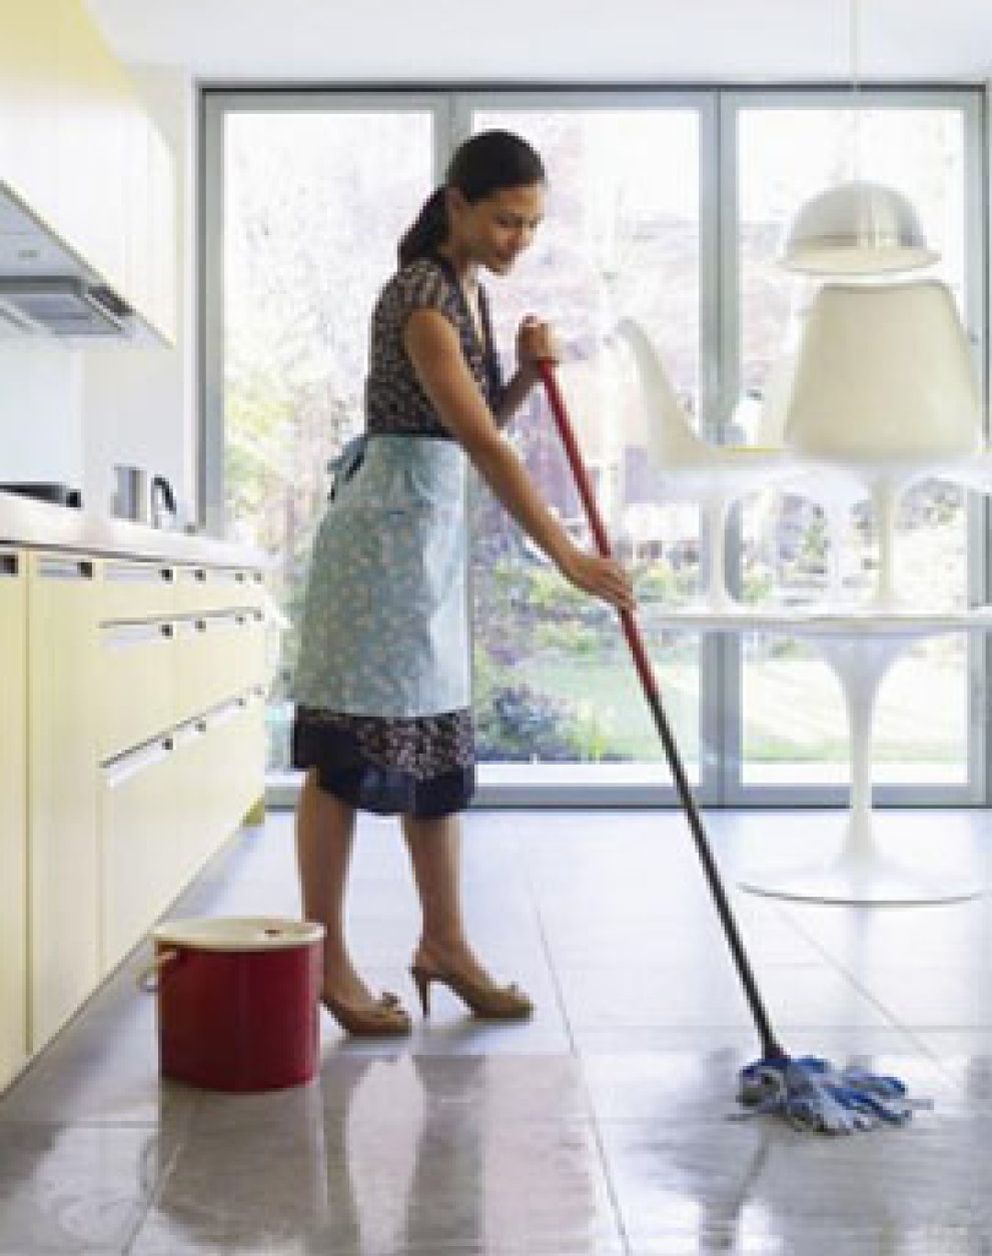 Foto: Báñez permite que sean los propios empleados de hogar quienes se regularicen